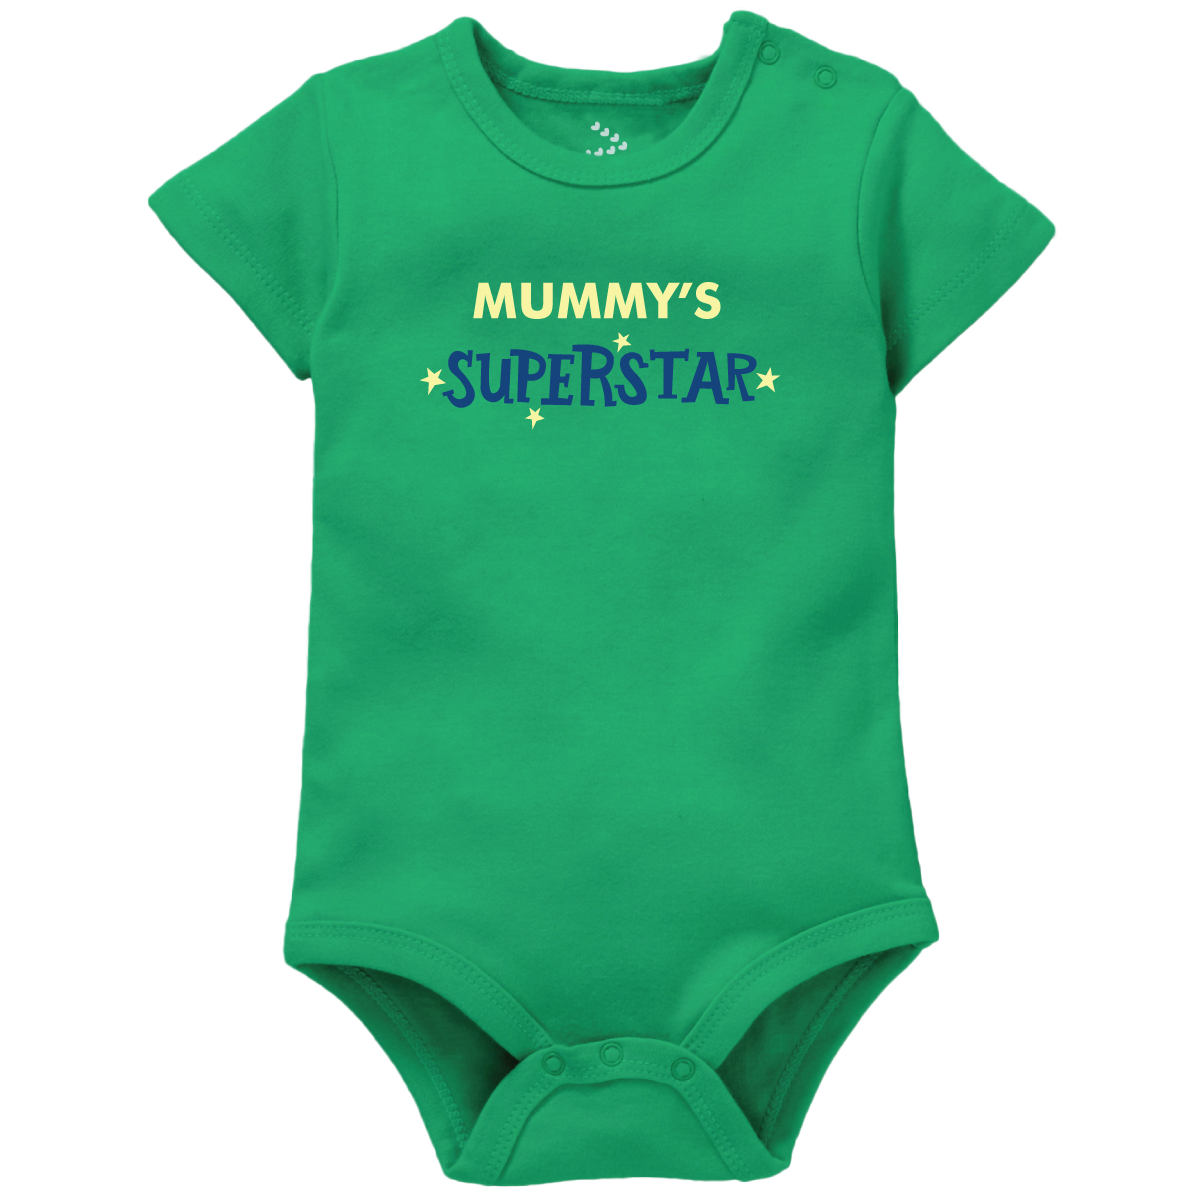 Mummy's Superstar